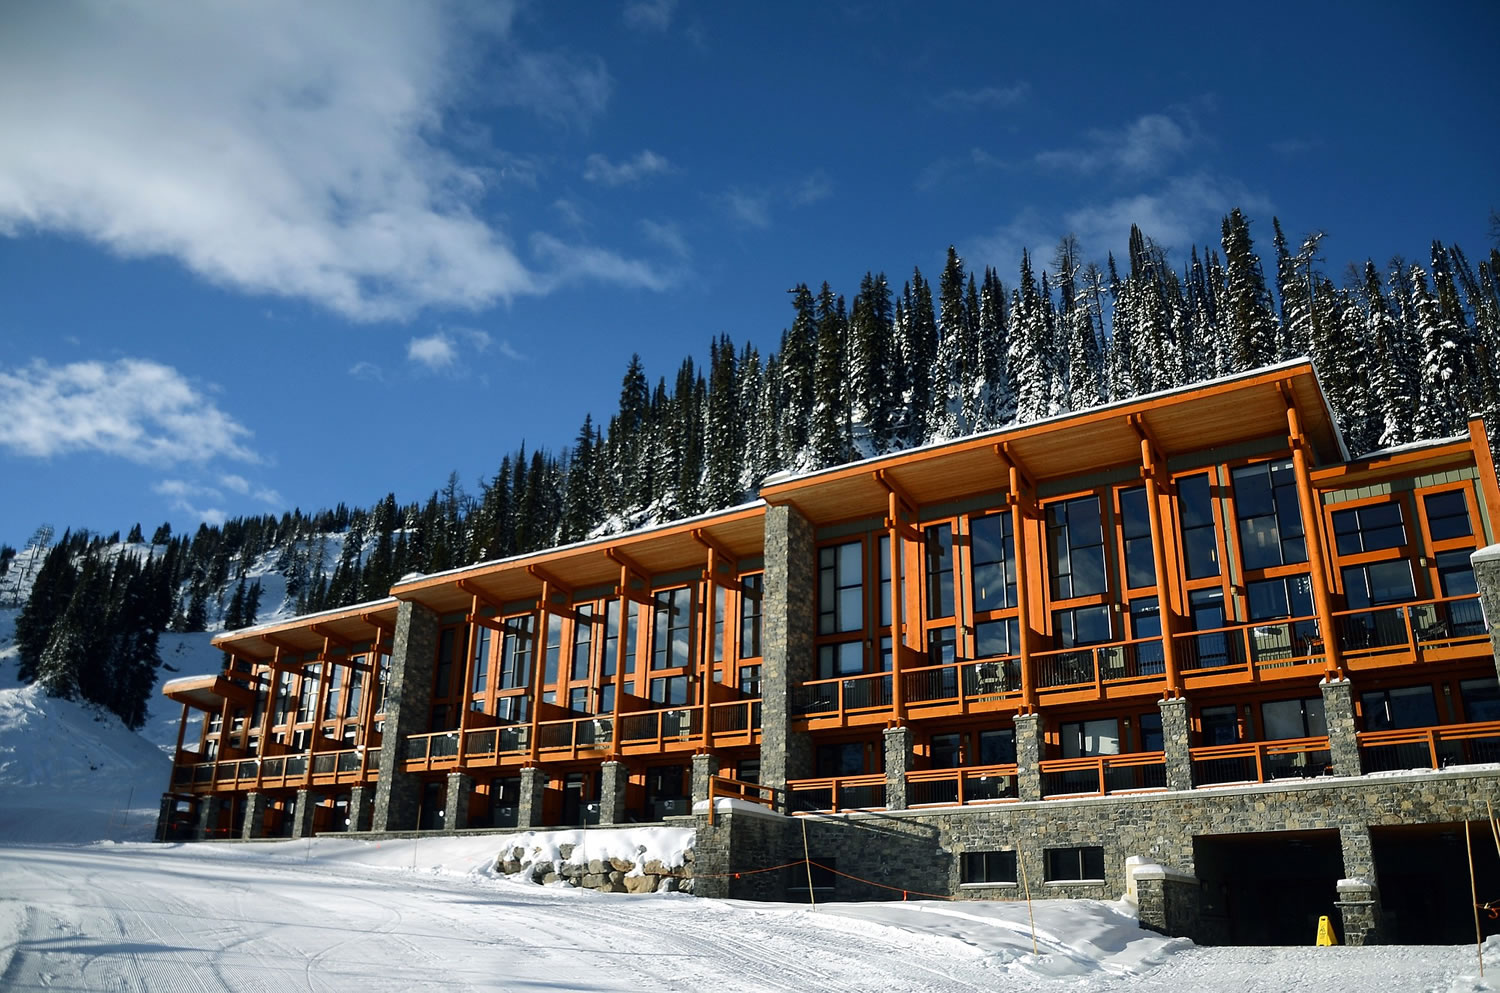 Sunshine Mountain Lodge at Sunshine Village in Banff, Alberta, Canada.